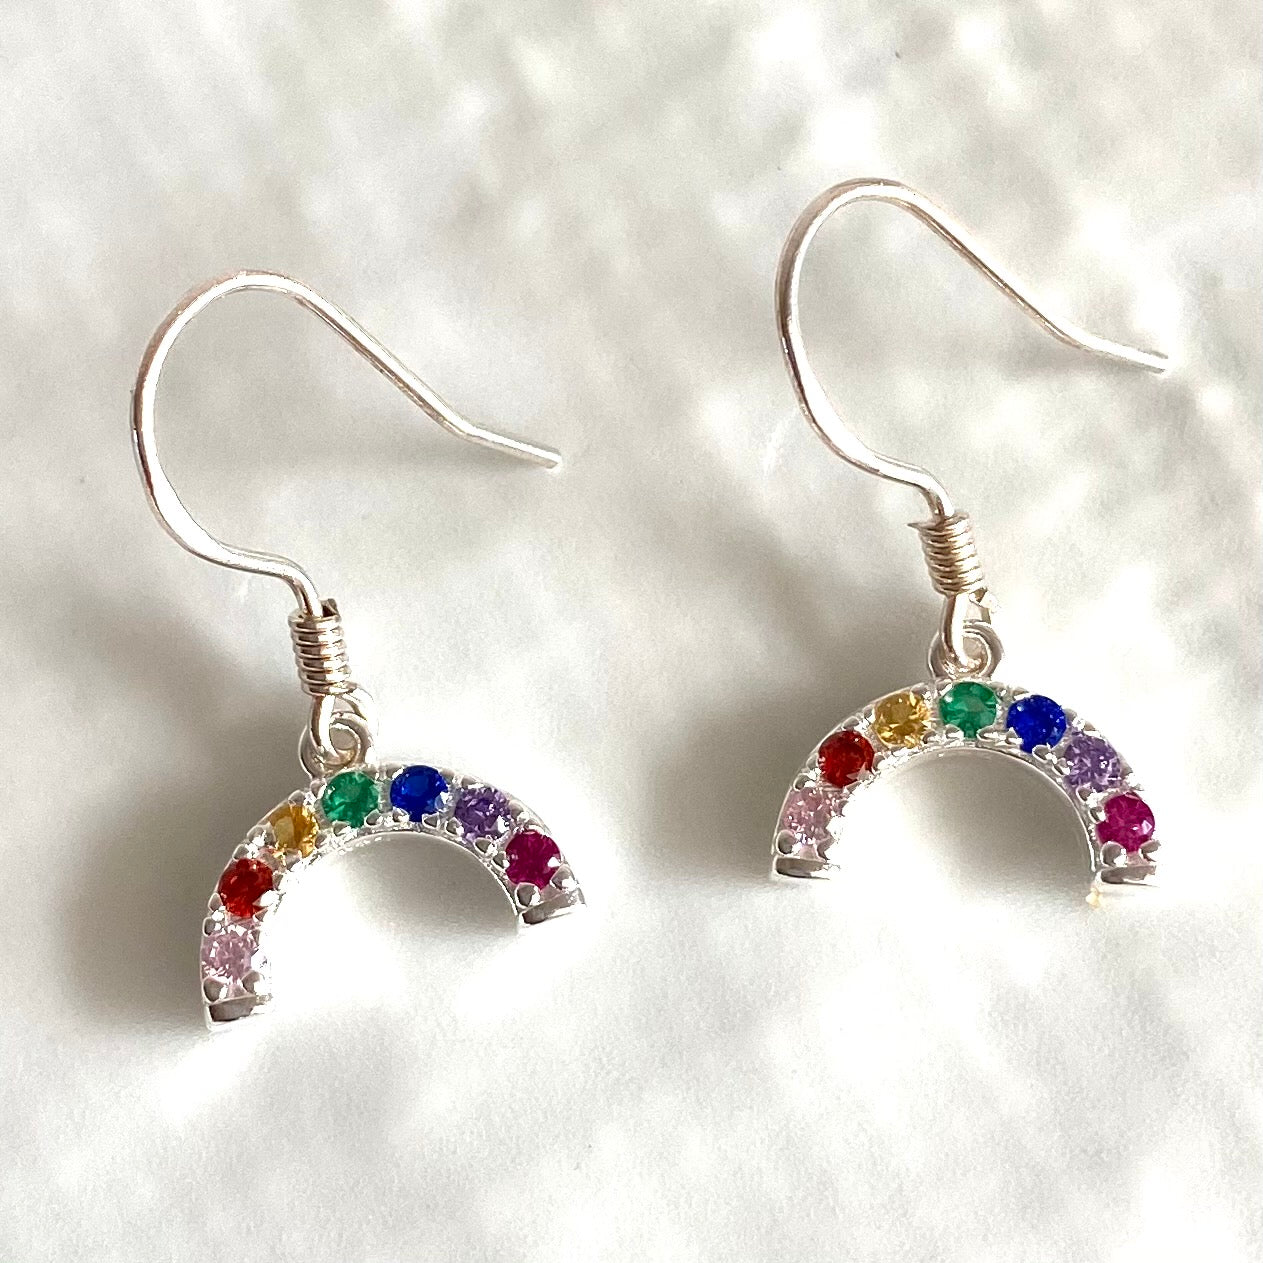 Mini rainbow earrings